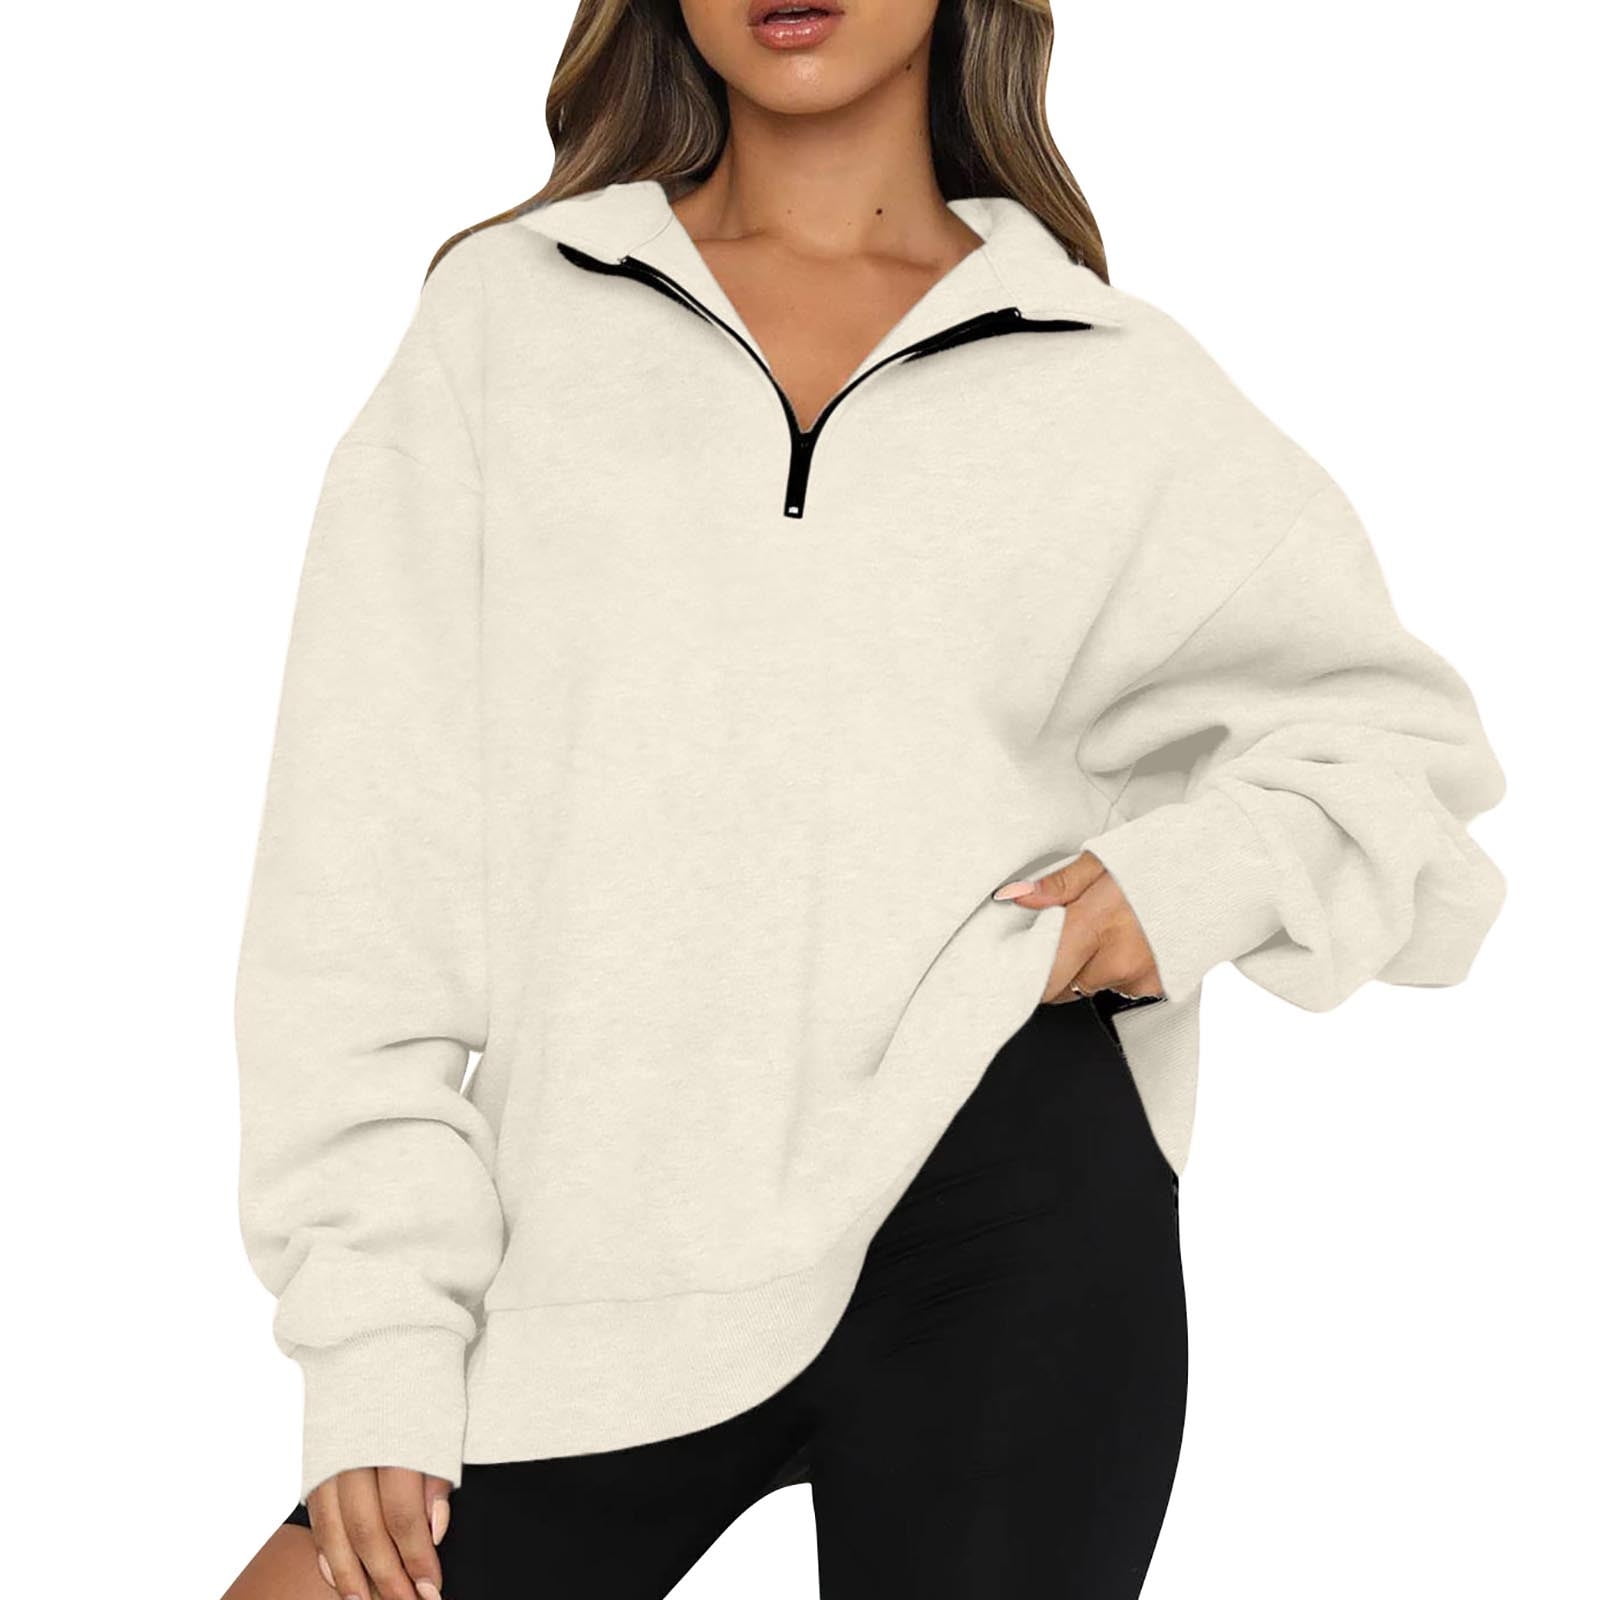 Womens Oversized Half Zip Pullover Tops Long Sleeve Sweatshirt Quarter ...